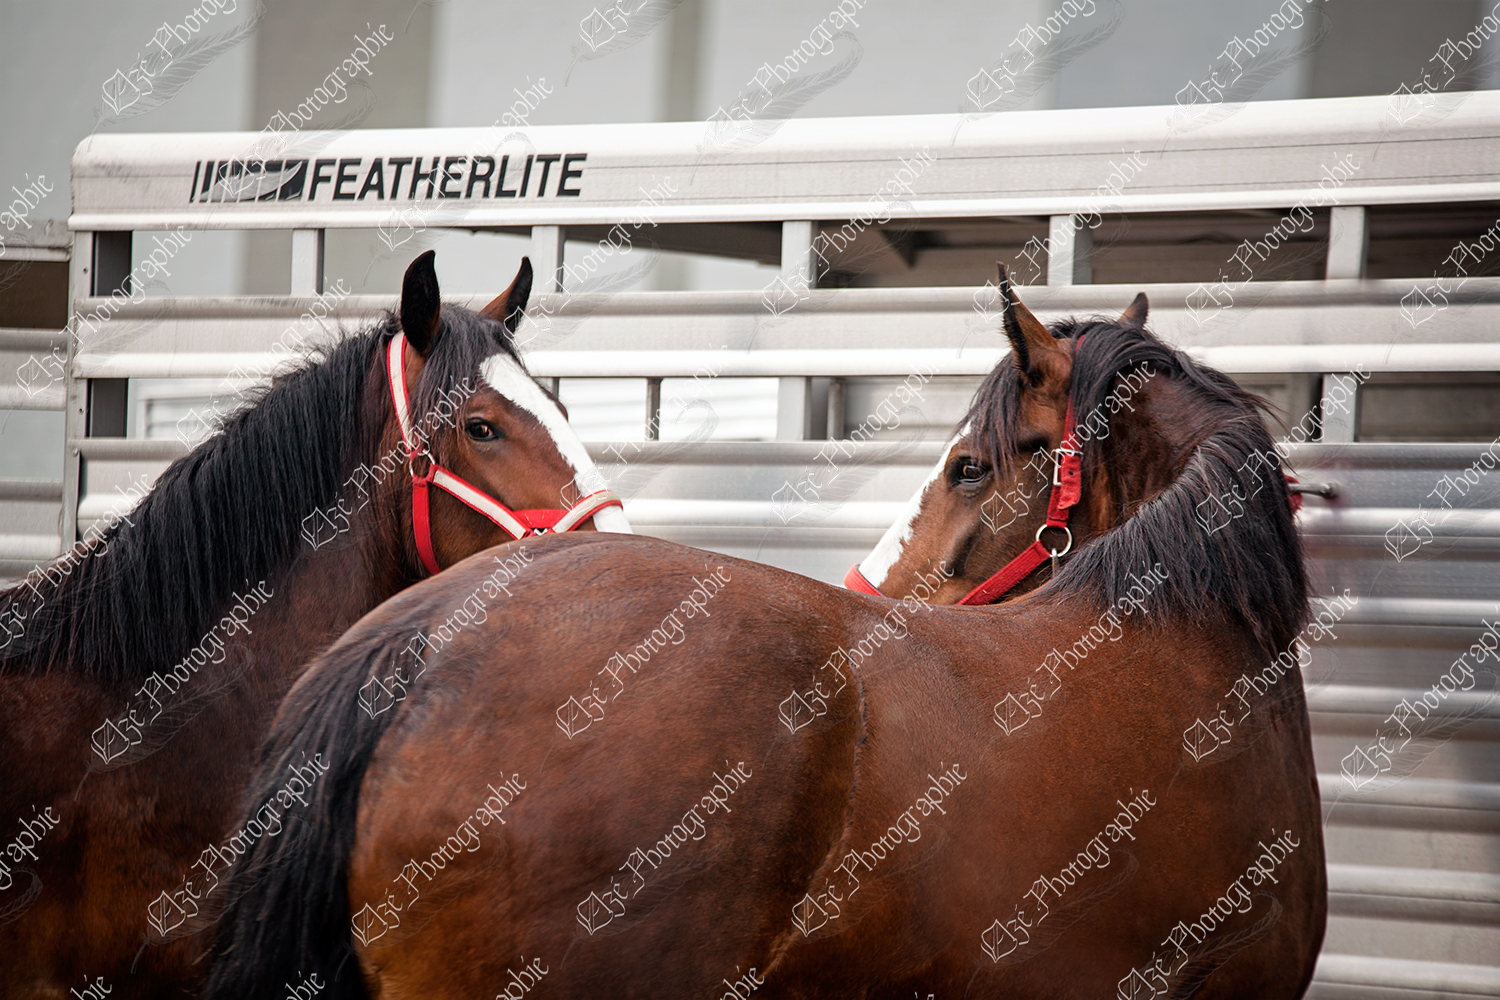 elze_photo_6588_remorque_chevaux_shire_horses_show_summer